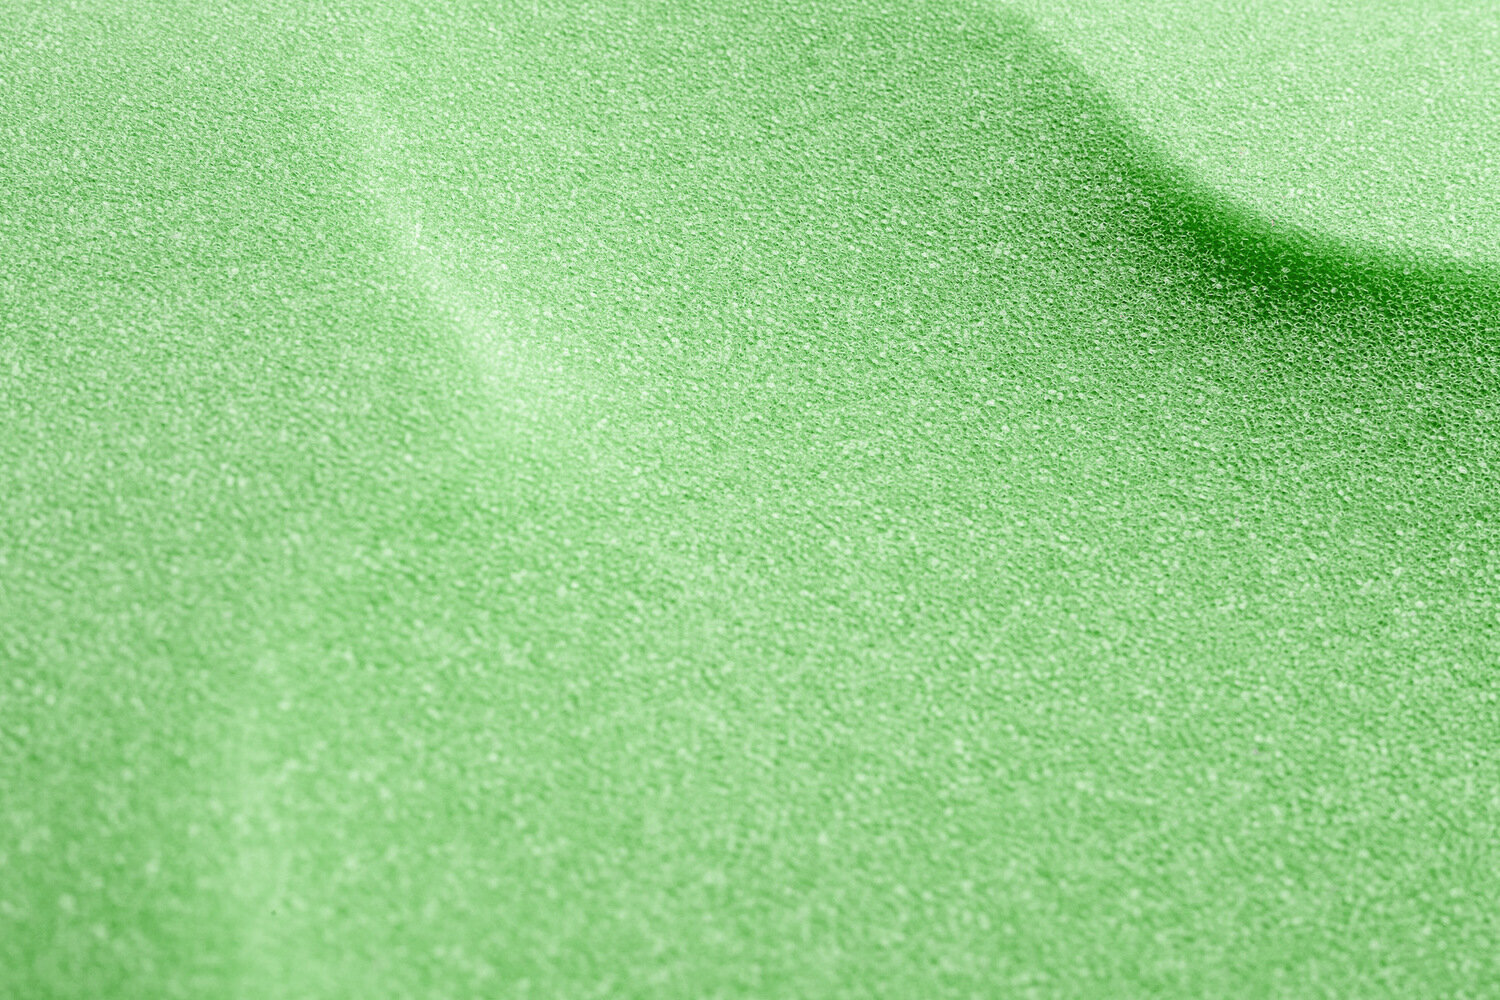 Čiužinys vonelei Sensillo Midi, žalias kaina ir informacija | Maudynių priemonės | pigu.lt